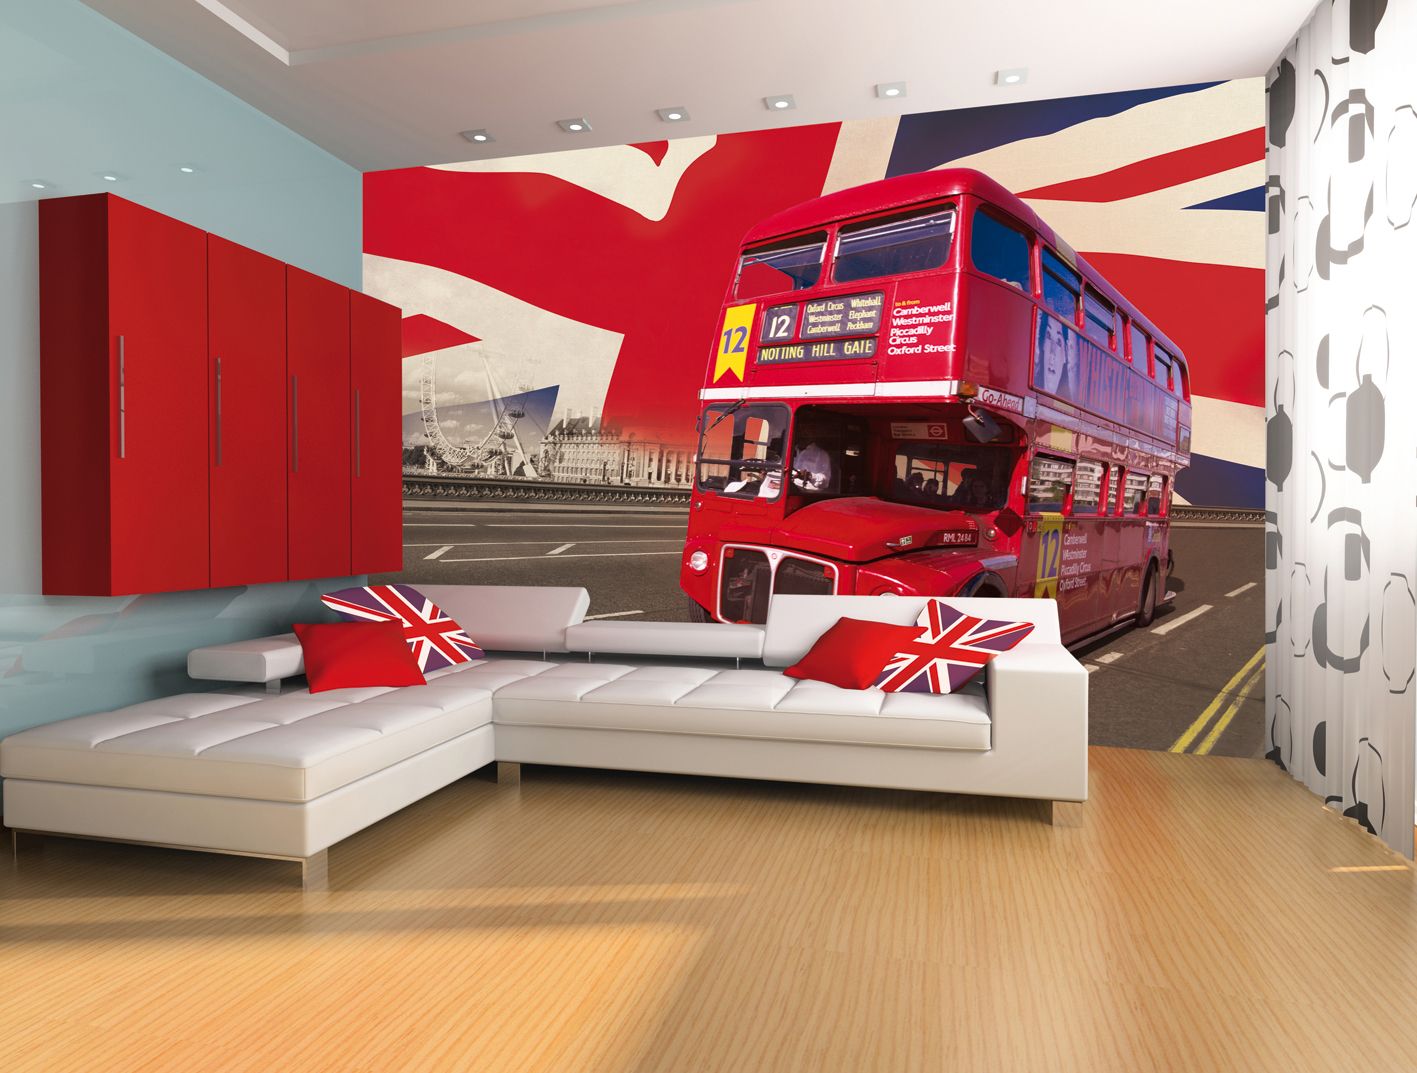 london themed wallpaper,room,interior design,mural,wall,living room